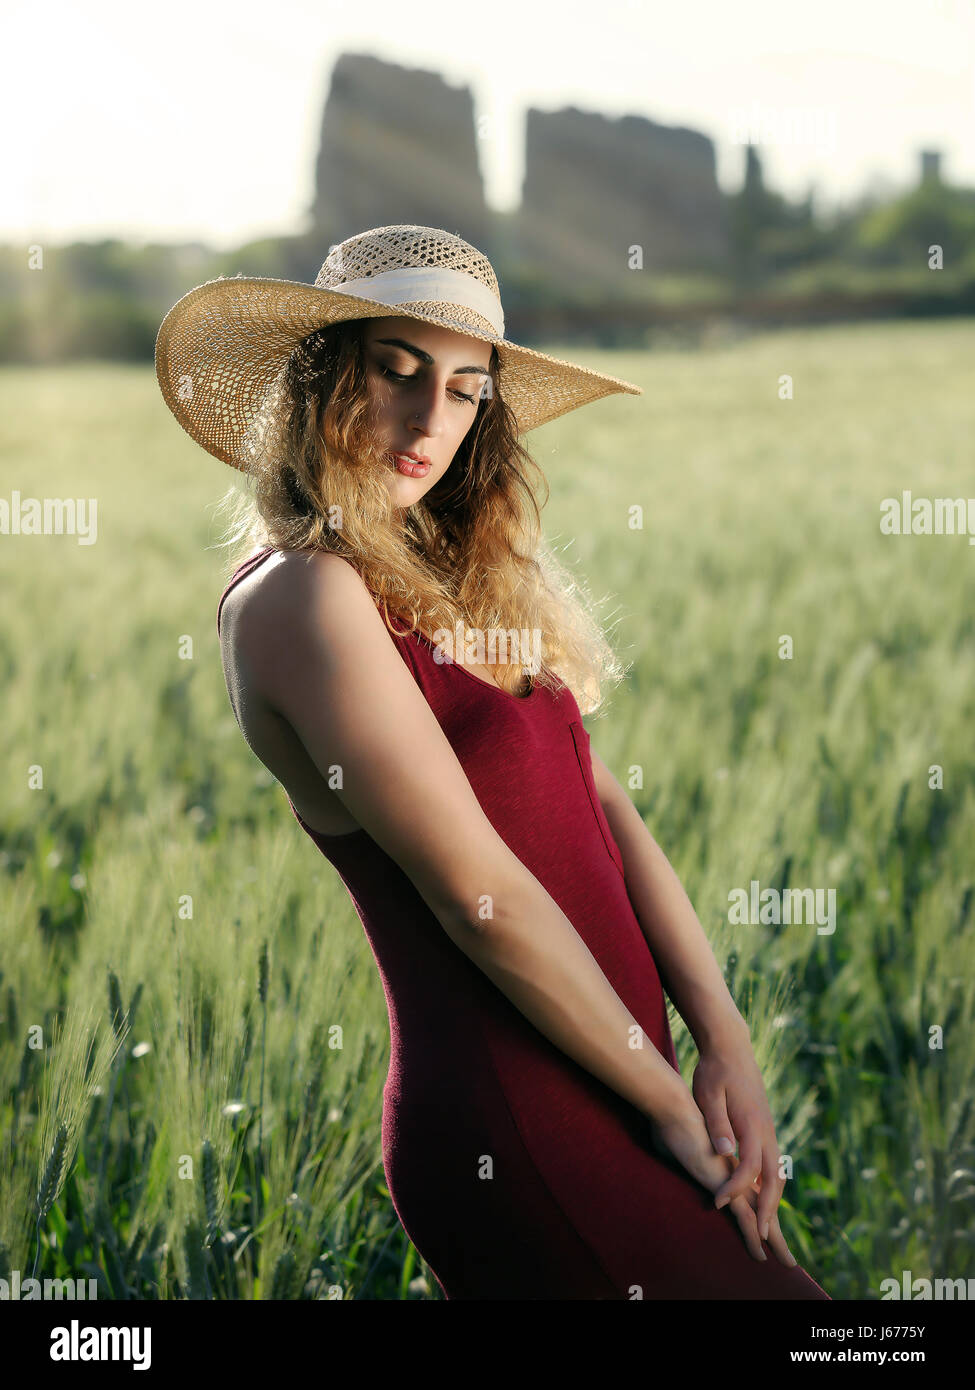 Blonde Mädchen im Freien. Mit Hut und roten Kleid im Weizenfeld. Hintergrundbeleuchtung. Stockfoto